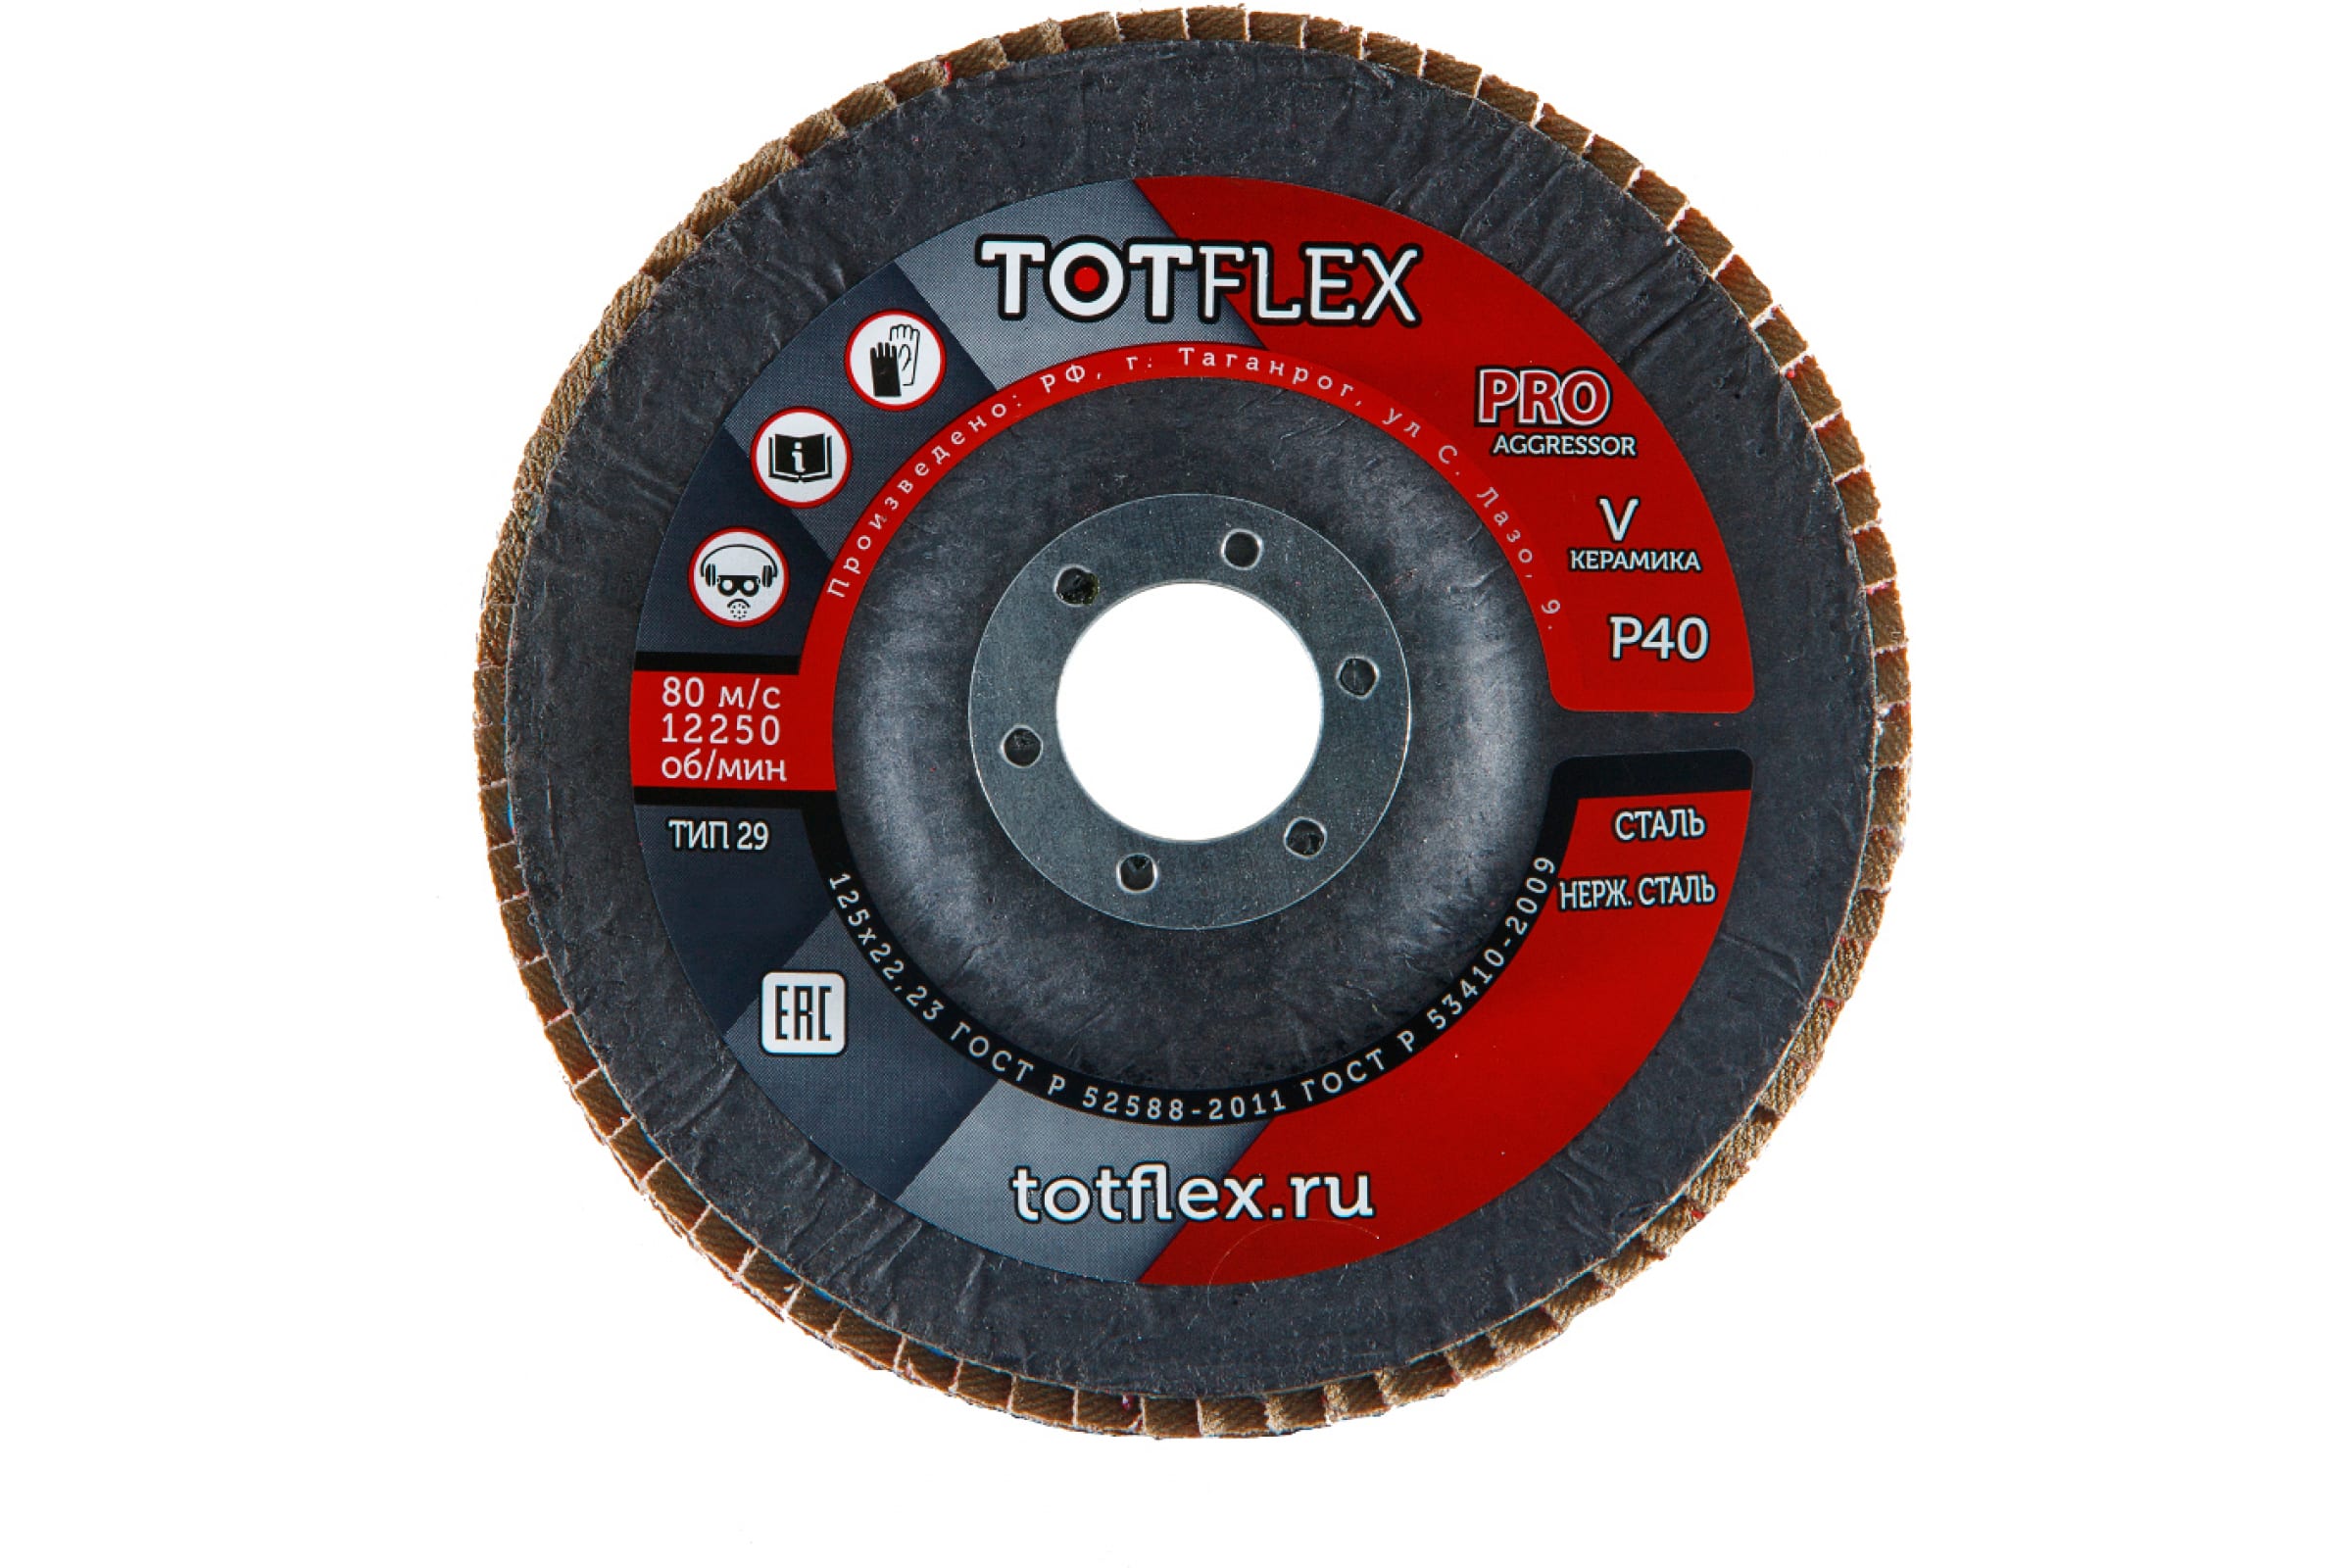 Totflex Круг лепестковый торцевой AGGRESSOR-PRO 2 125x22 V P40 4631148128248 лепестковый торцевой круг totflex